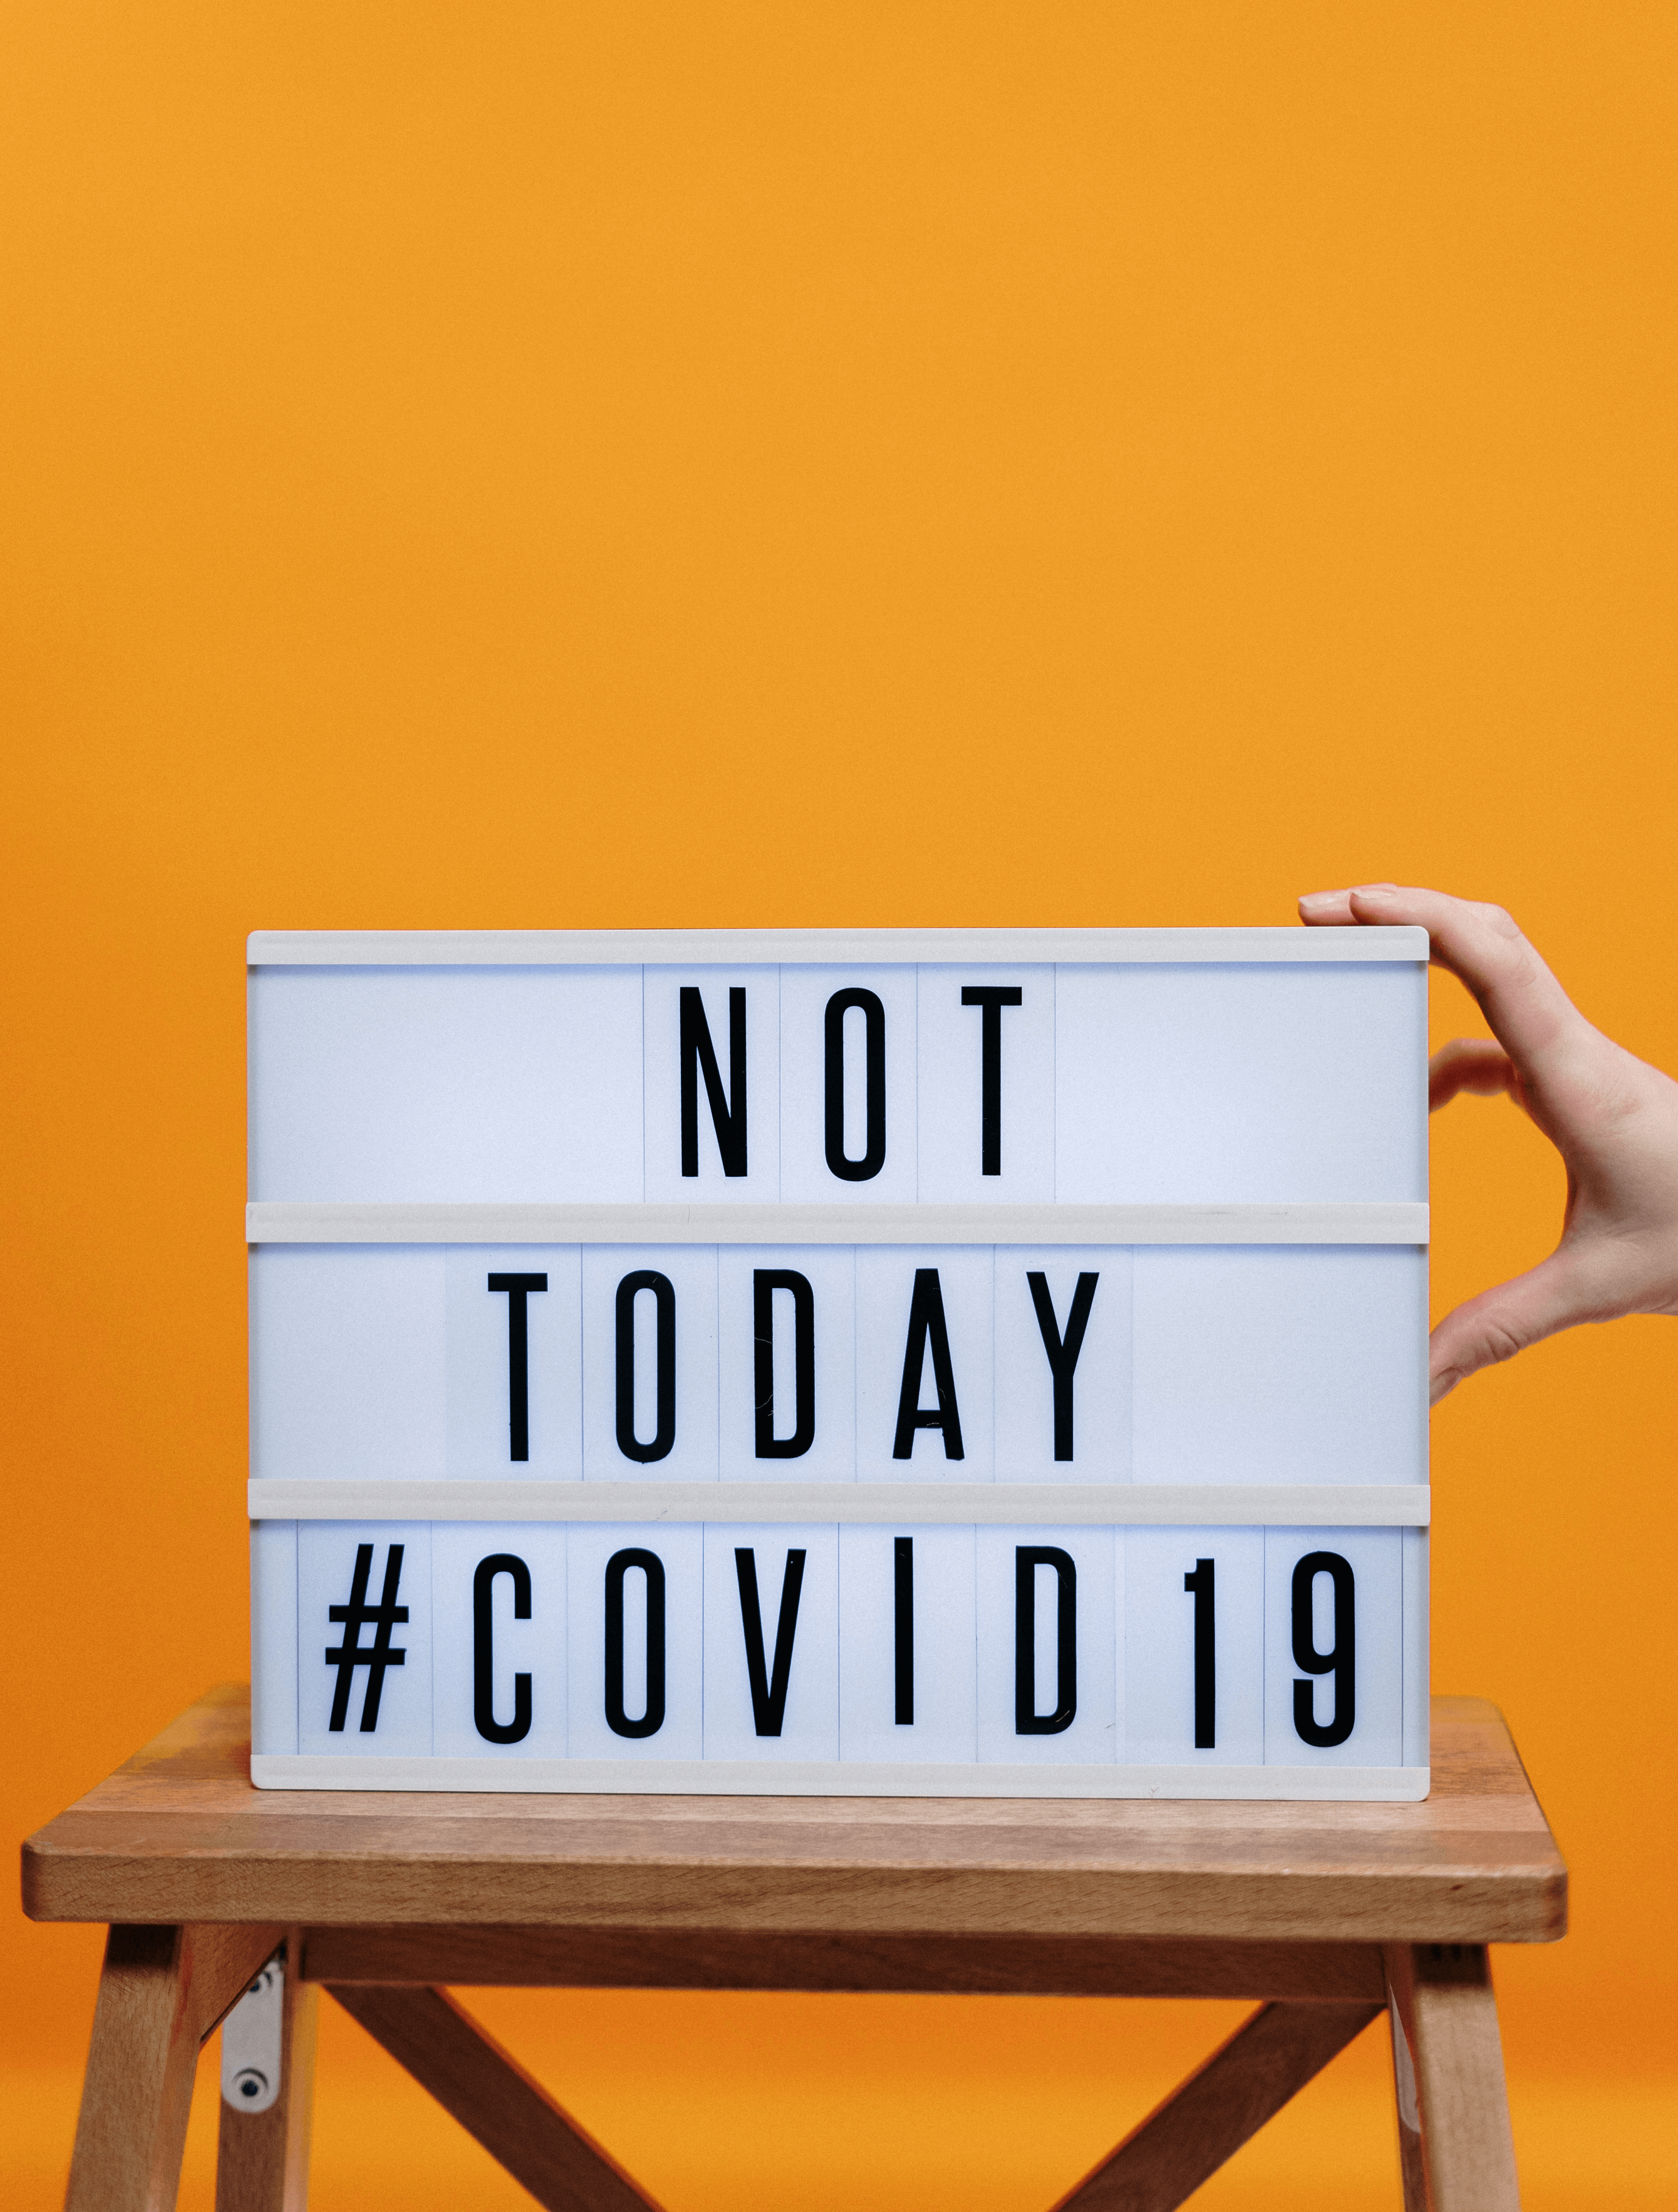 Retro-Leuchtbox mit der Aufschrift "Not today #covid19" vor orangenem Hintergrund